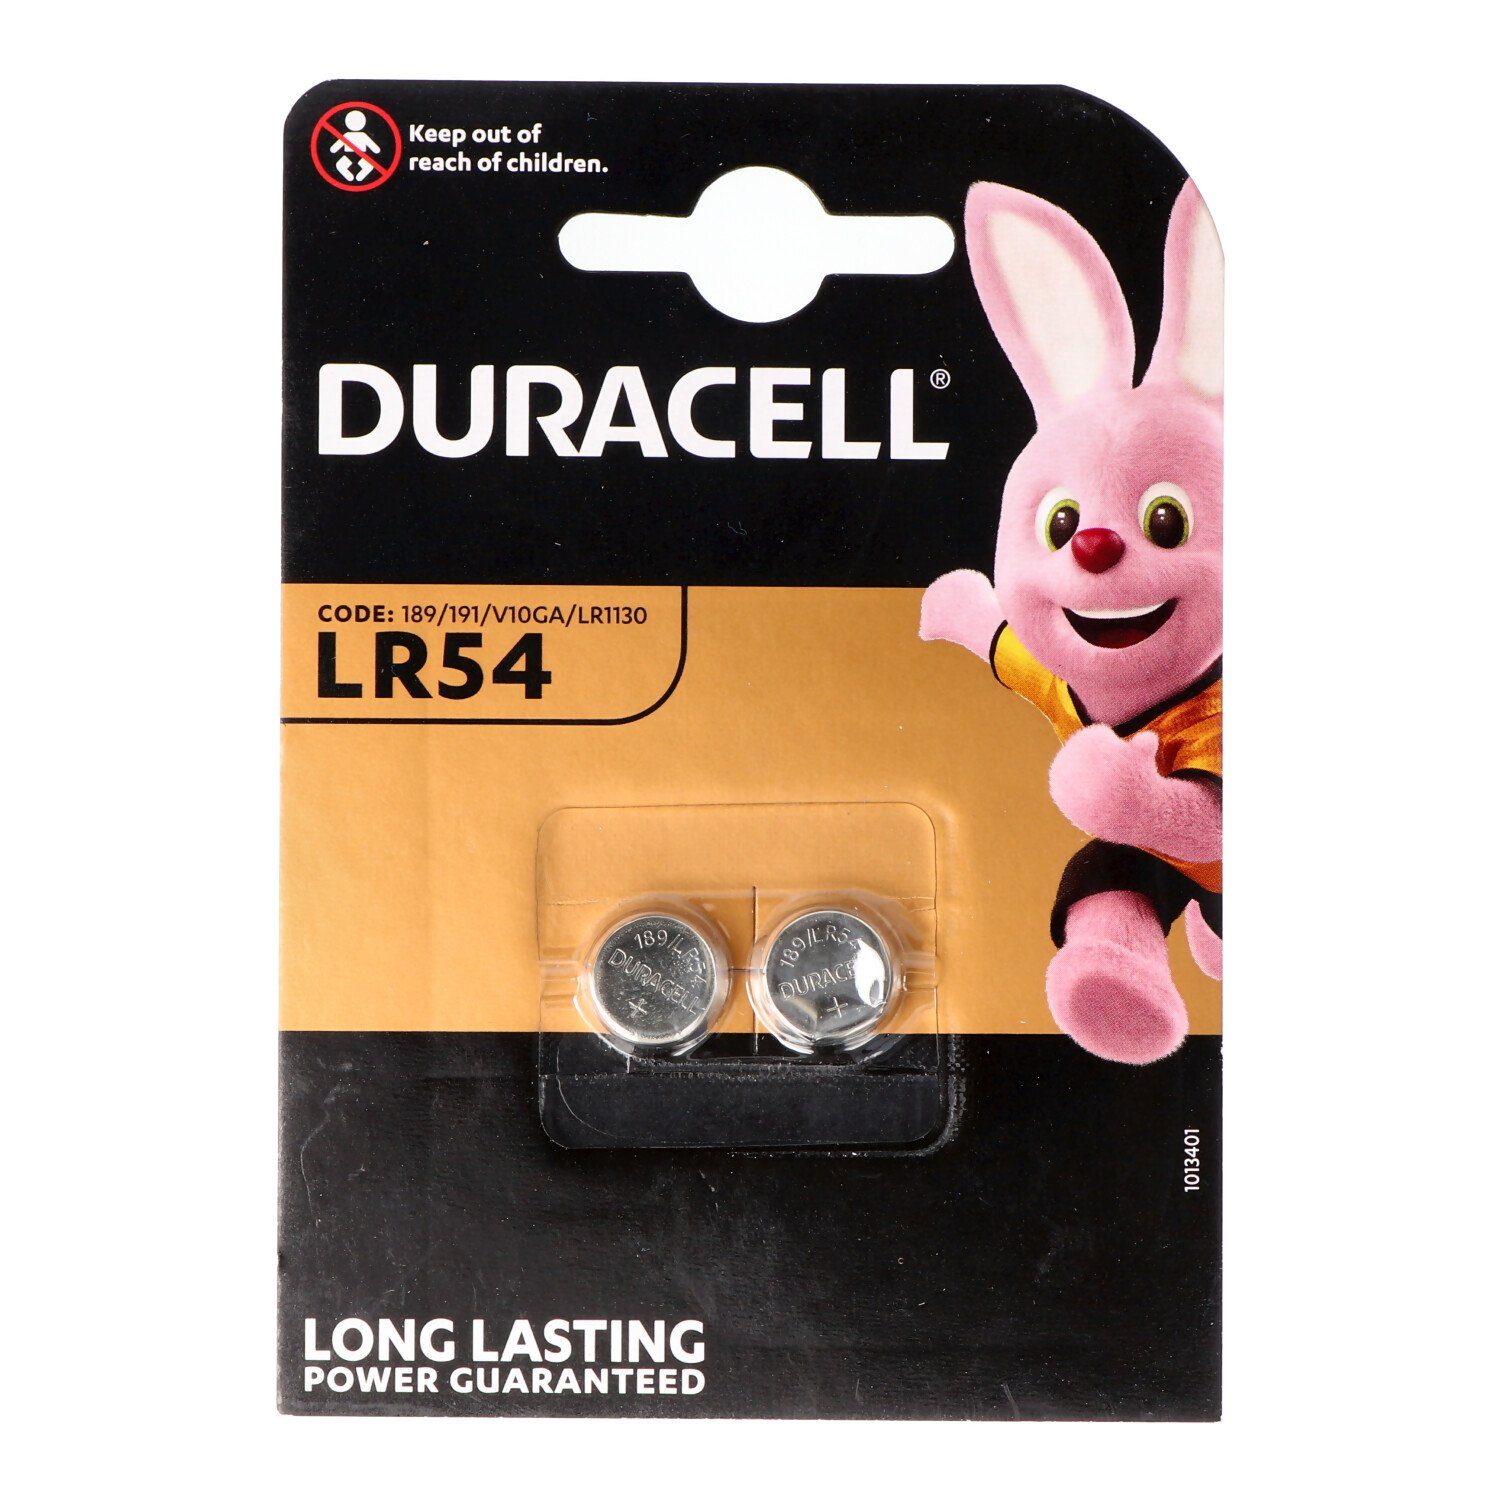 Duracell Duracell Knopfzelle LR54, AG10, LR54, LR1130, 189, RW89, 2er Blister Knopfzelle, (1,5 V)